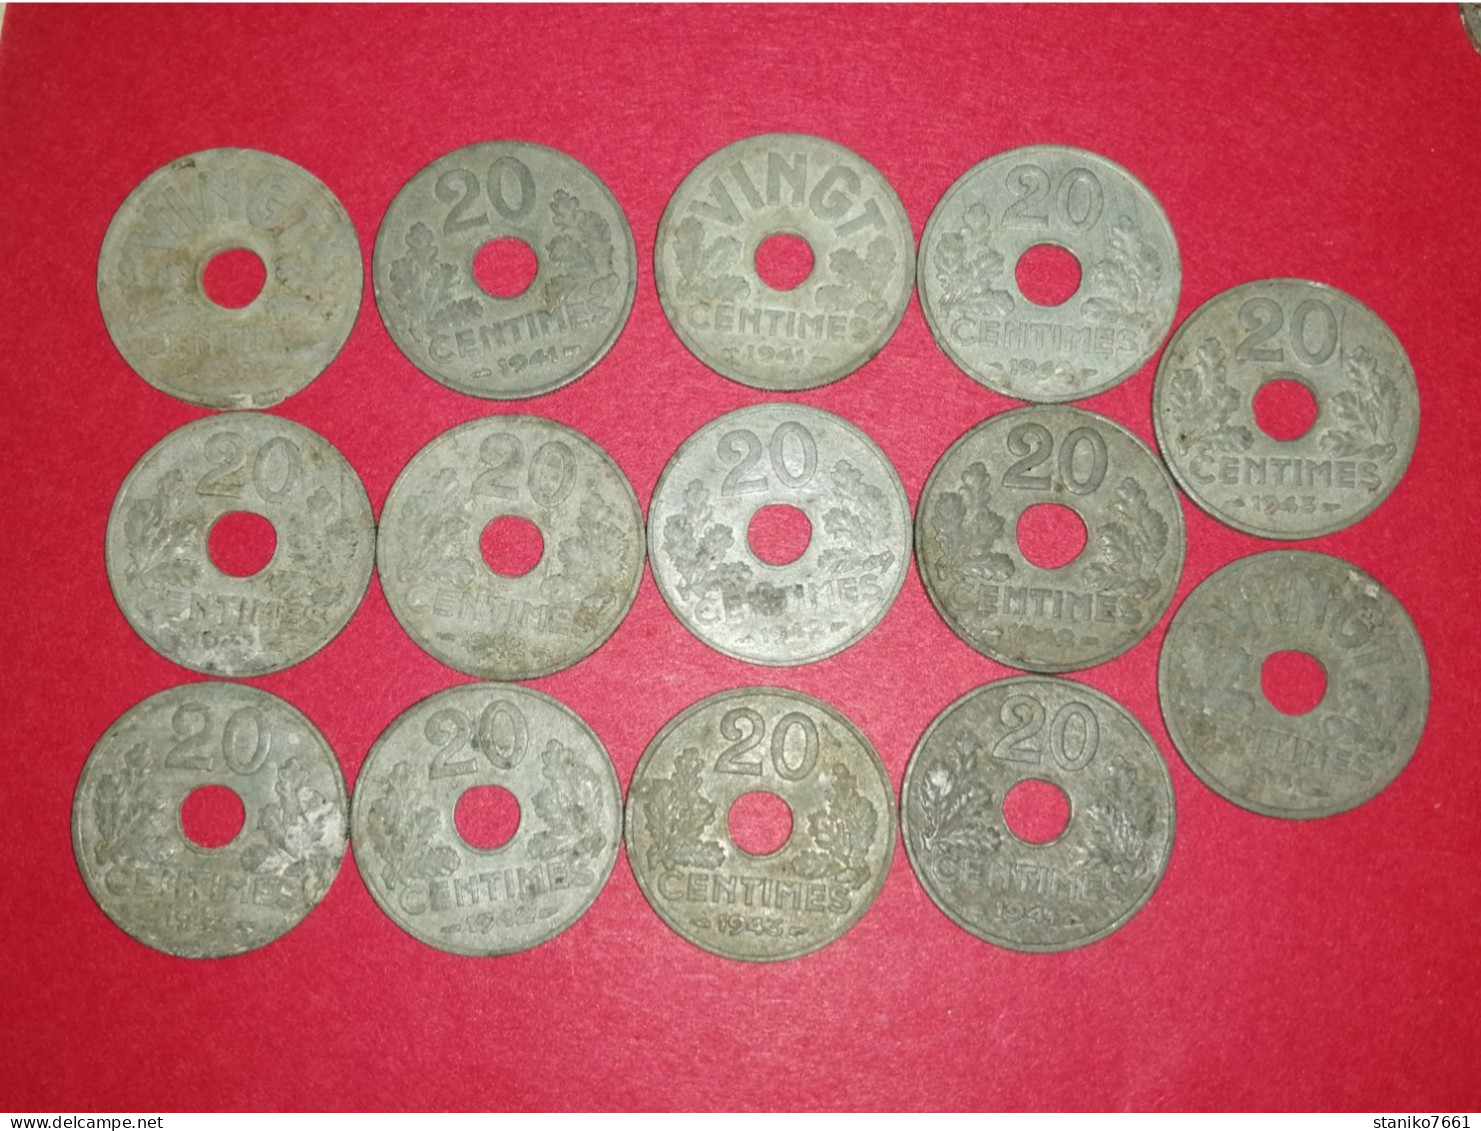 14 Monnaies Françaises 20 Et Vingt Centimes ETAT FRANCAIS 1941 1942 1943 ZING Non Nettoyé Voir Photos - 20 Centimes